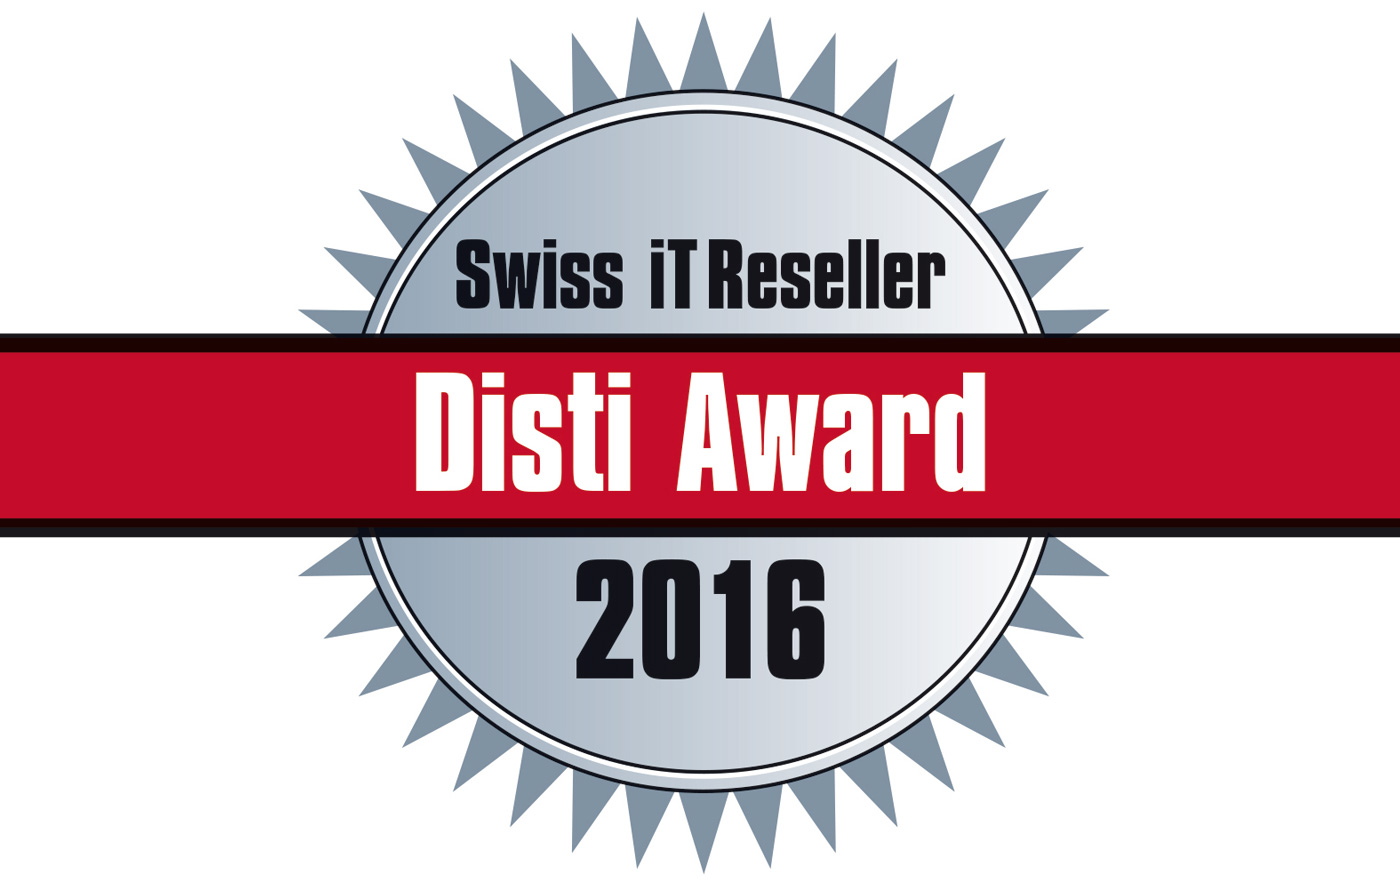 Disti-Award 2016: Nominationen noch bis 15. Juli möglich